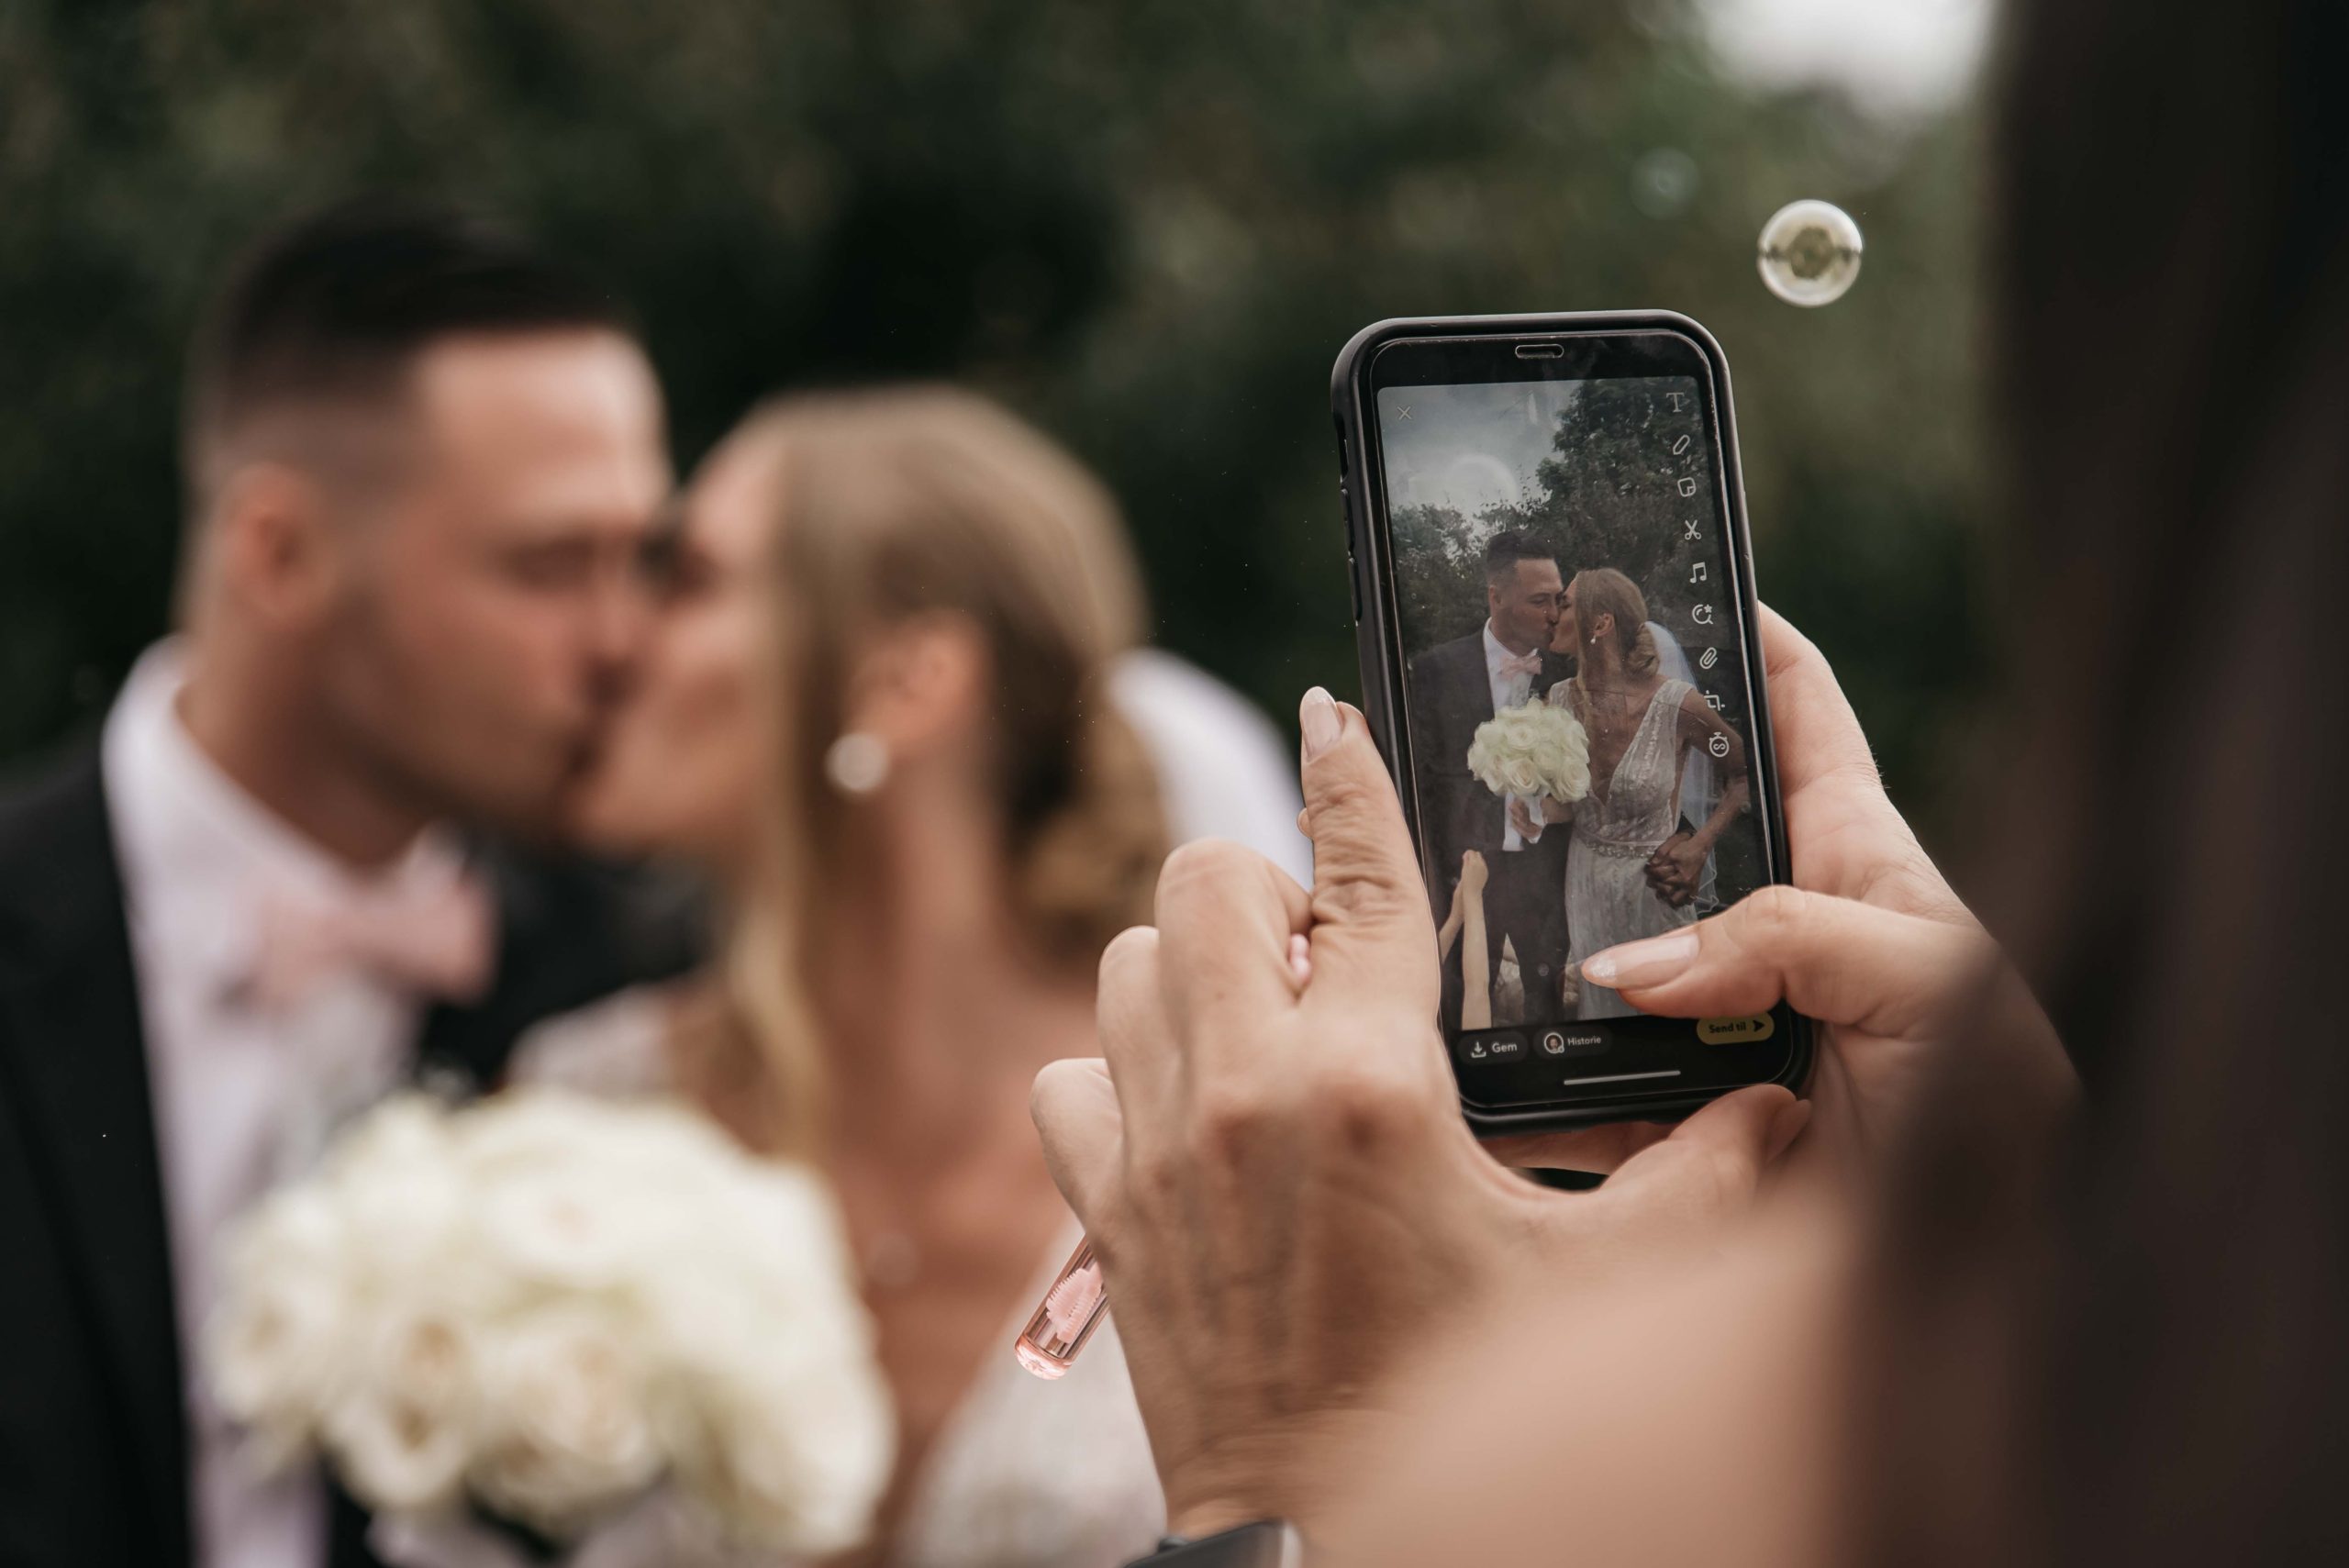 en gæst tager billeder af brudeparret med sin telefon